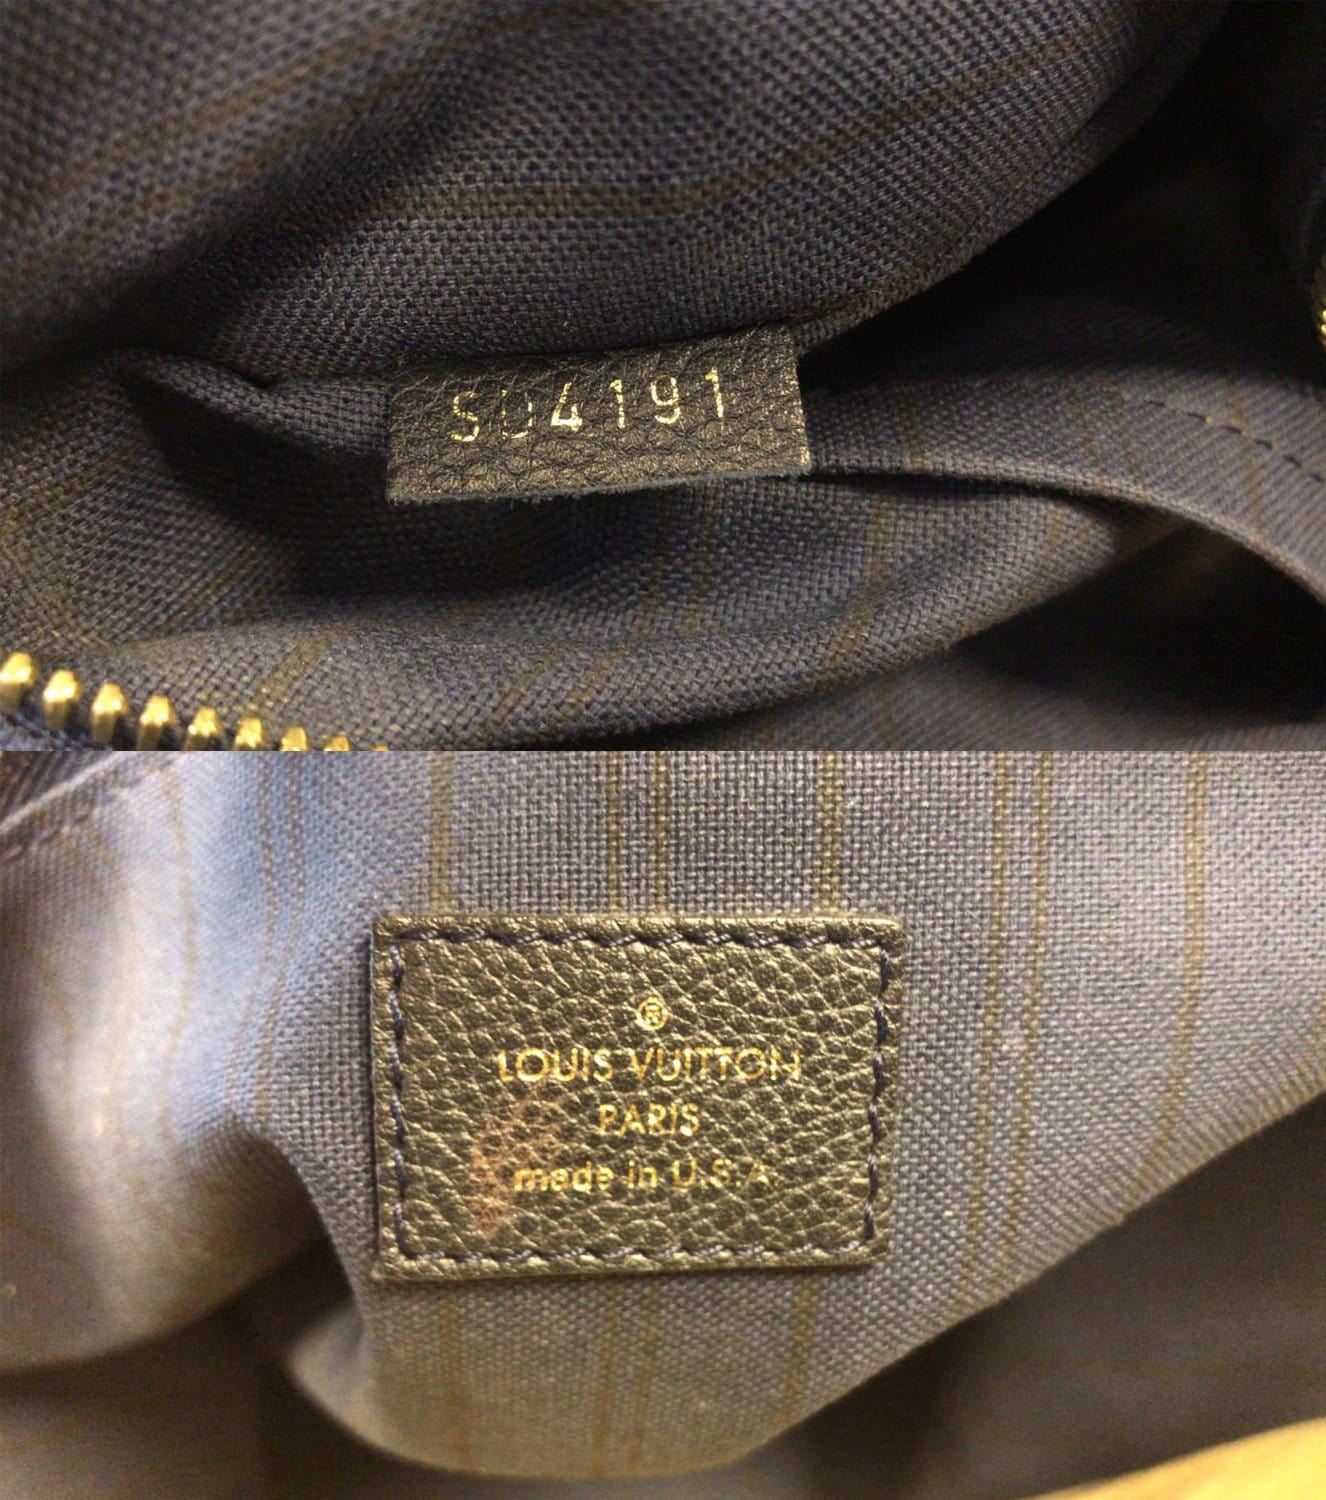 LOUIS VUITTON Citadine GM Empreinte Leather Shoulder Bag Black-US